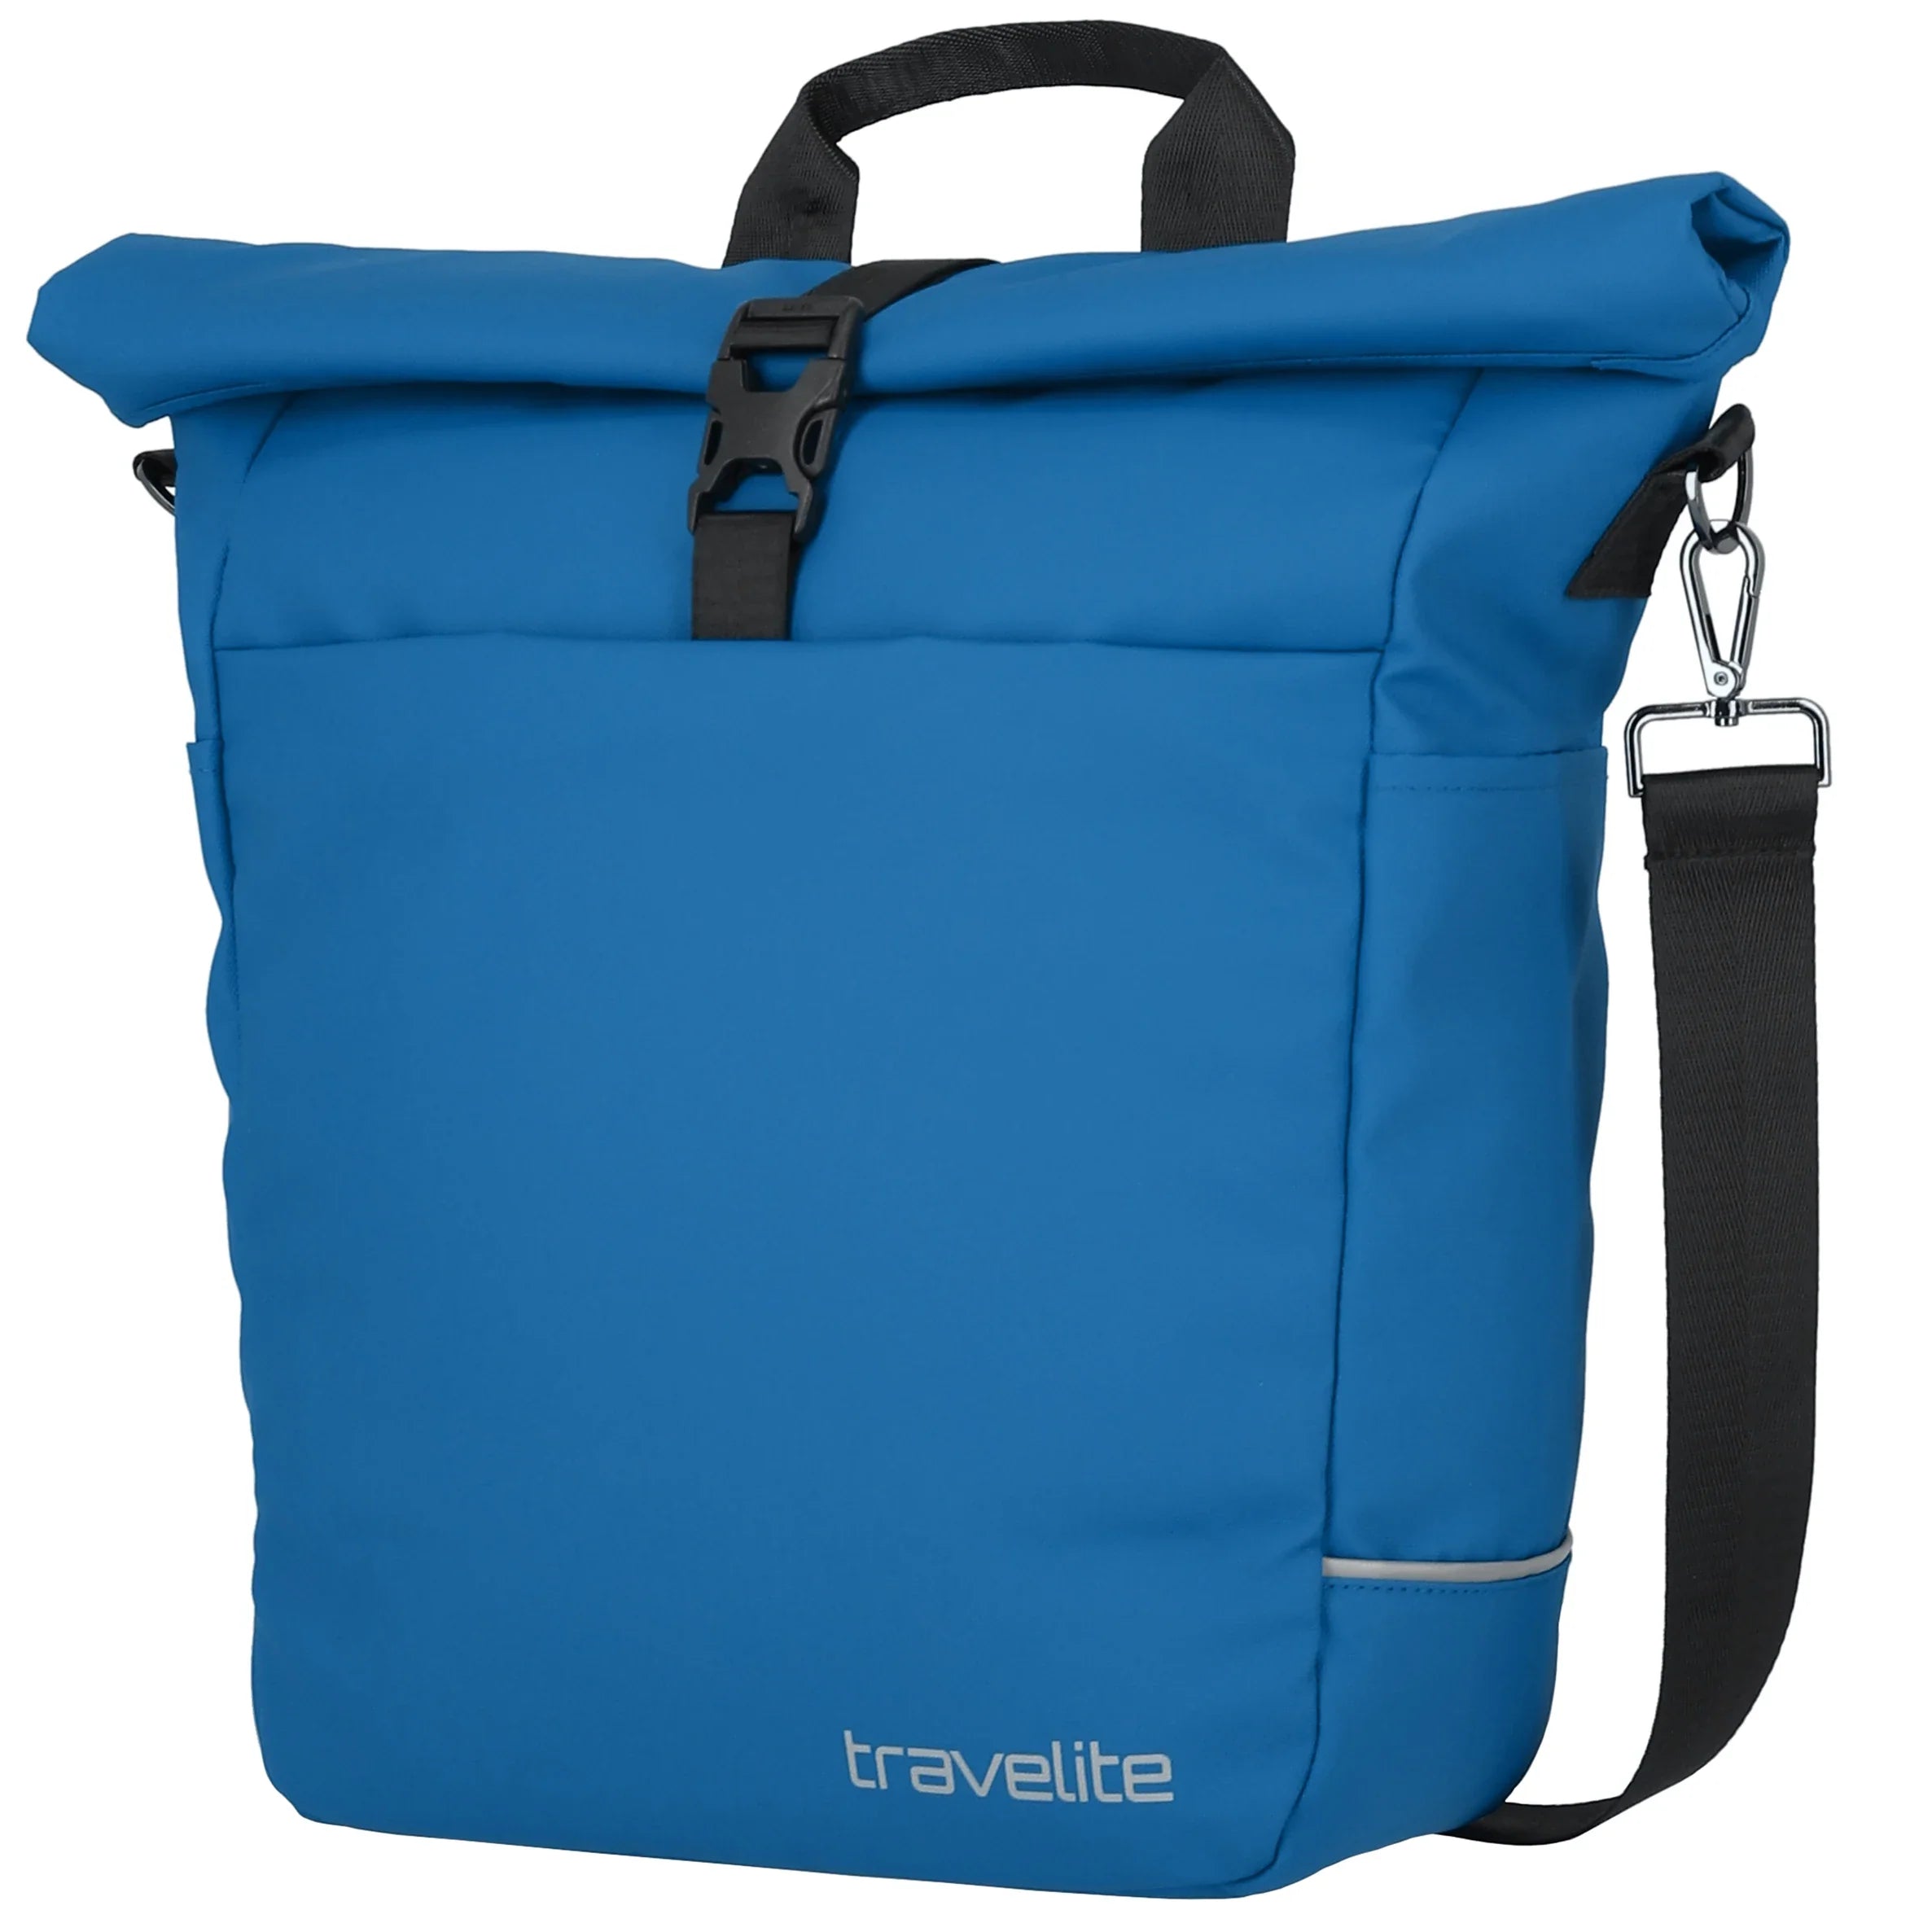 Travelite Basics tarpaulin shoulder bike bag 40 cm - Royal blue